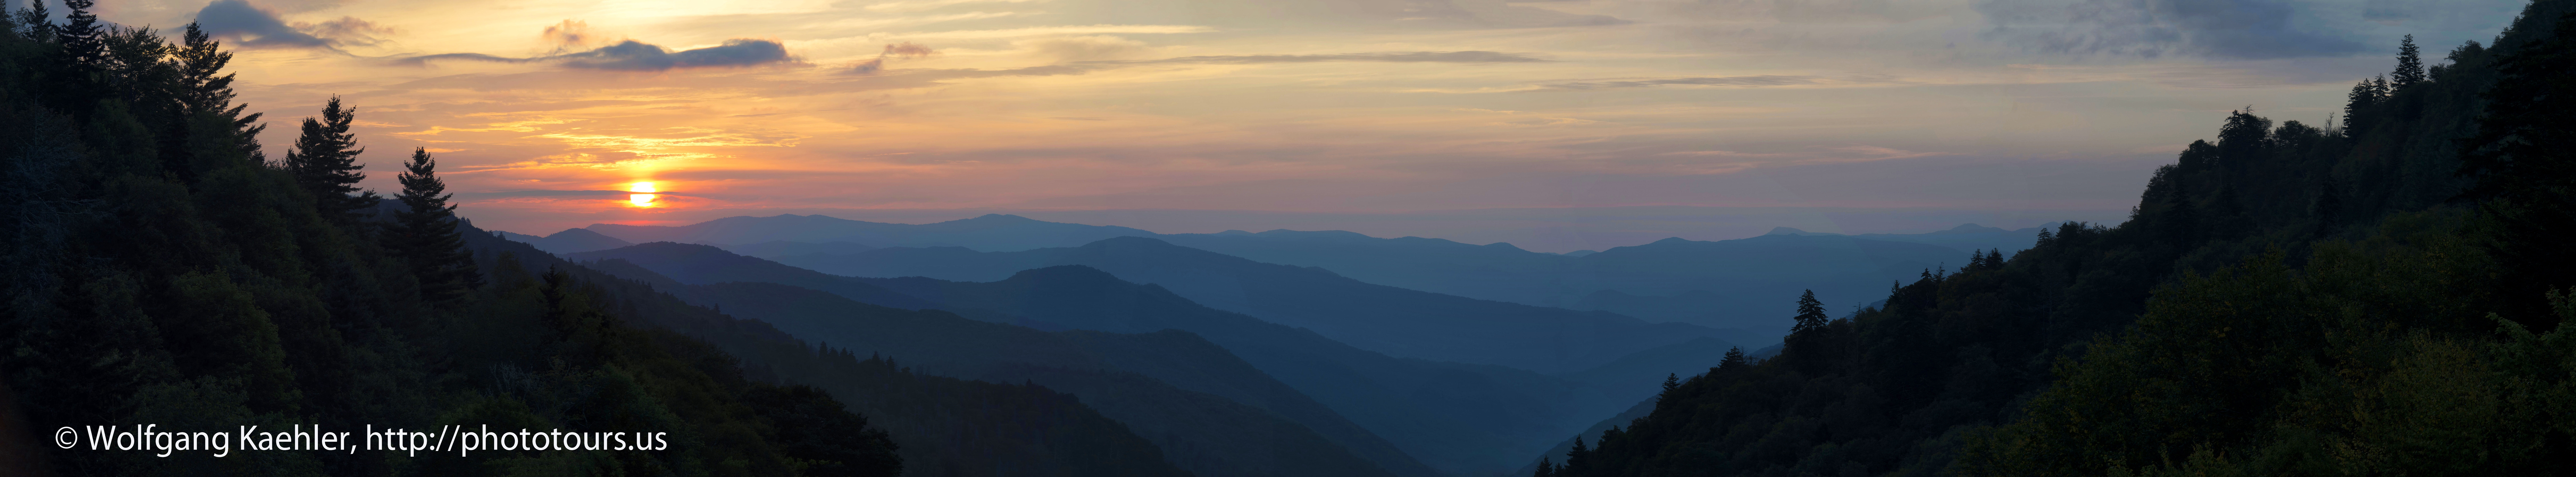 Smoky mountain panorama photo